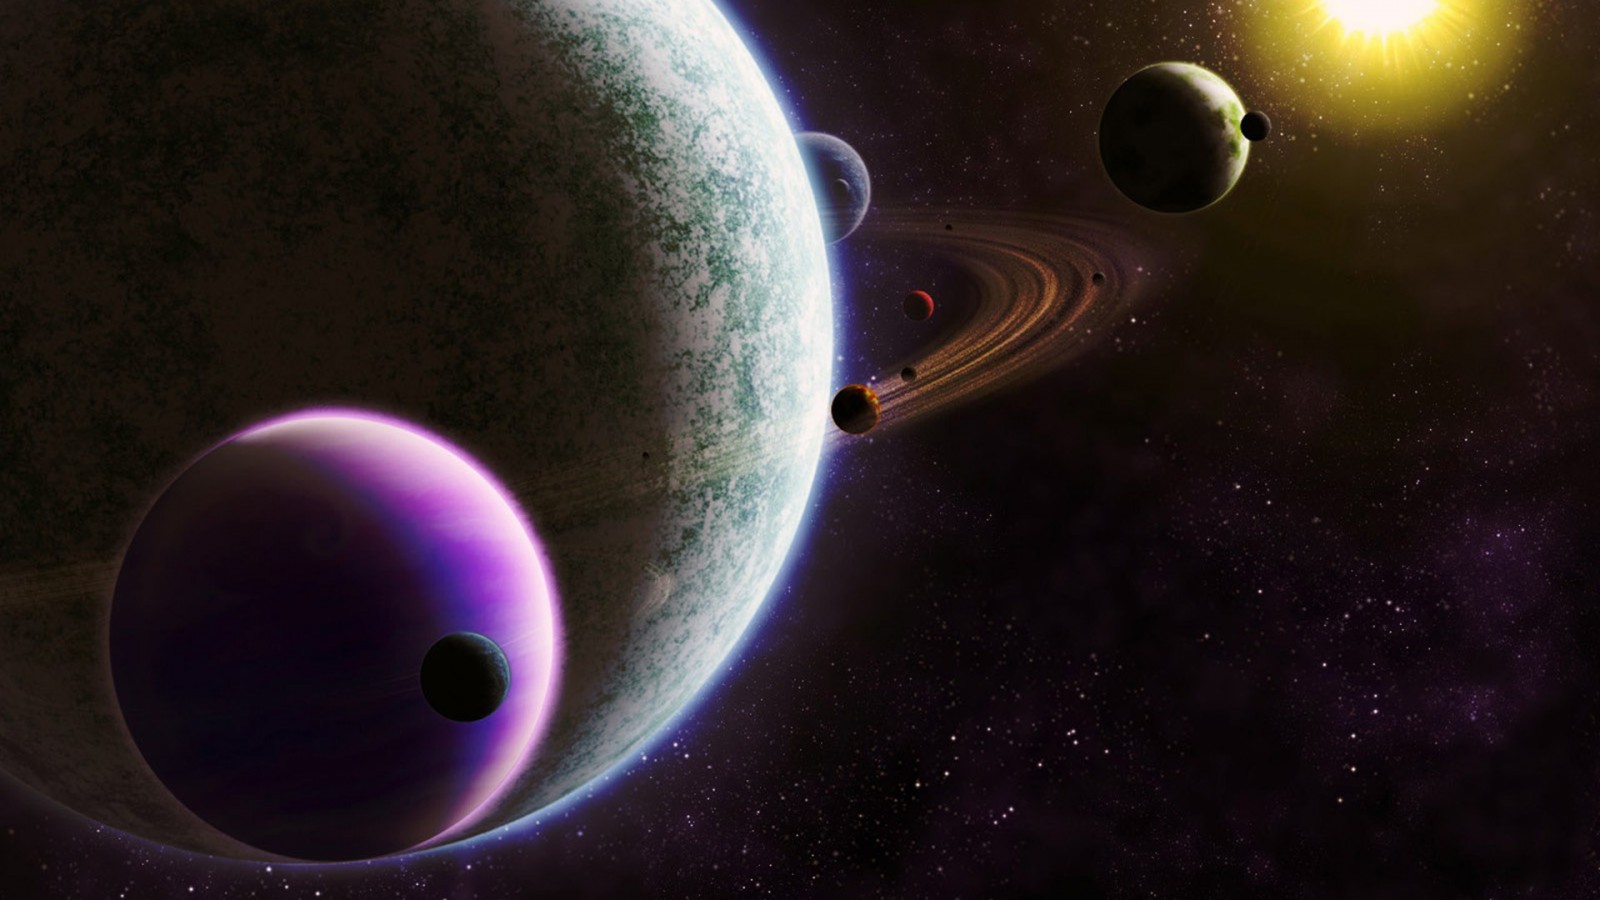 7th Pluto Uranus Square Alignment - Awaken Humanity